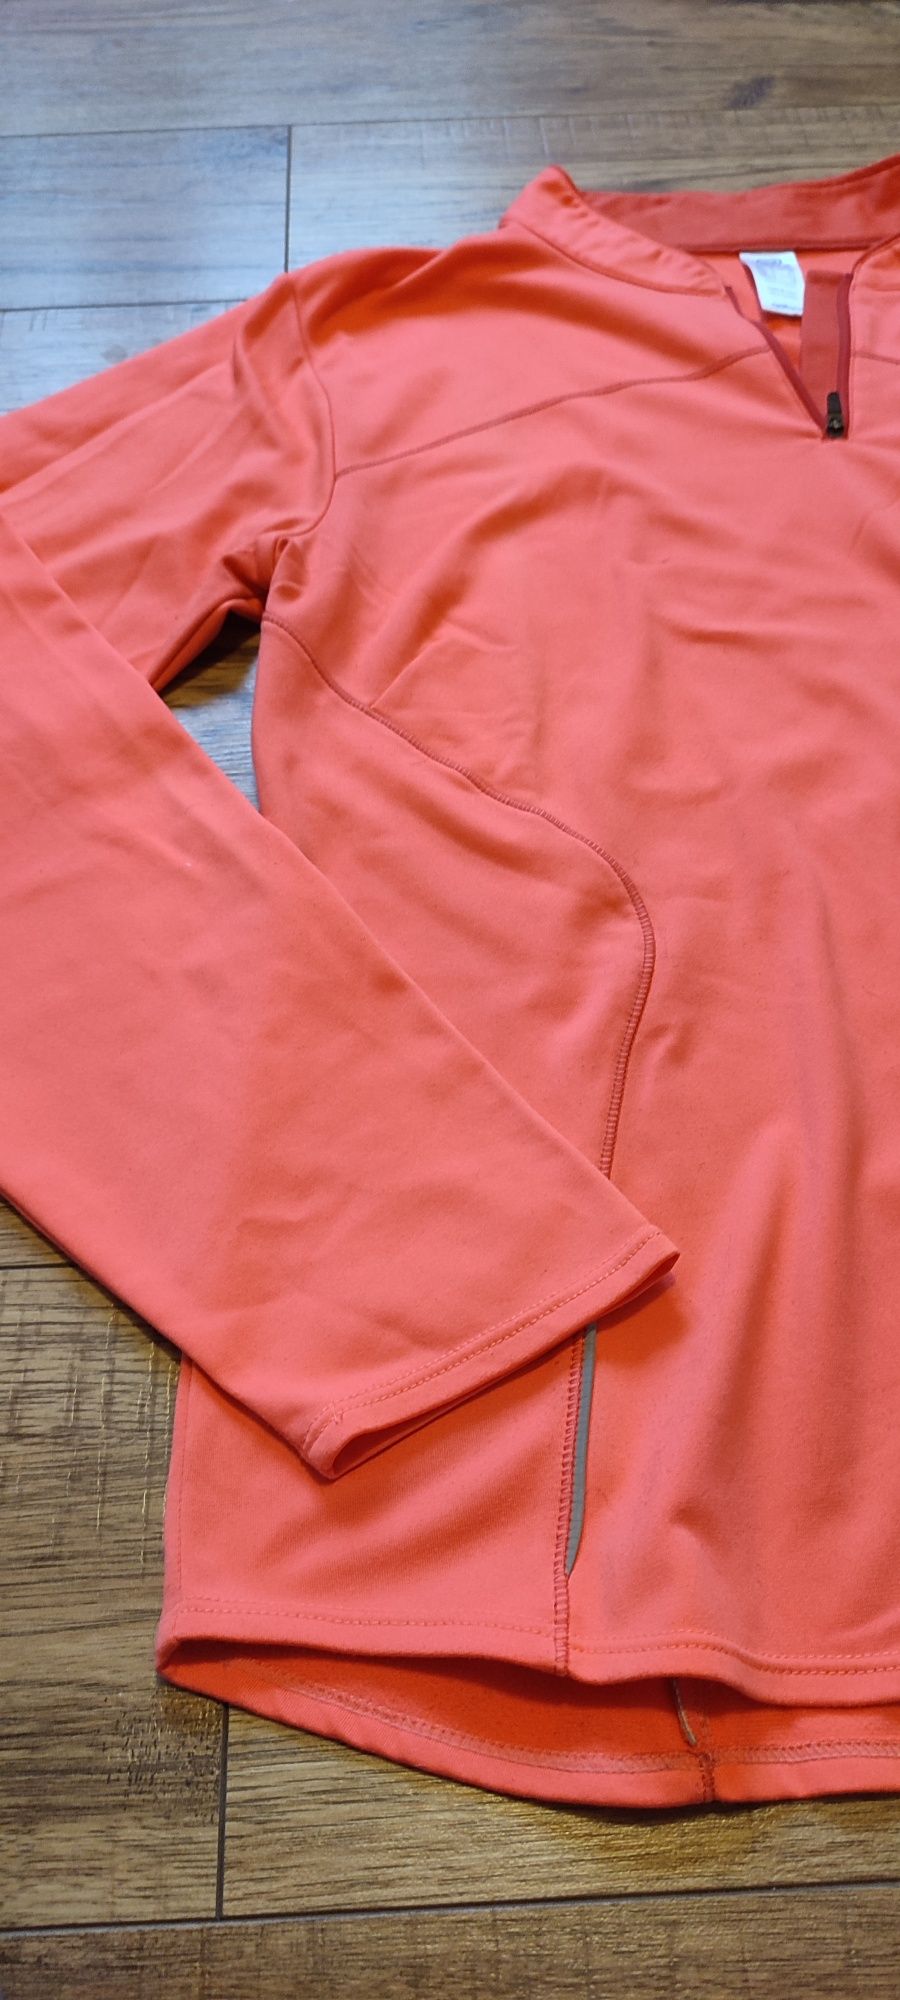 Kalenji bluzka funkcyjna ciepła damska neonowa 46 treningowa